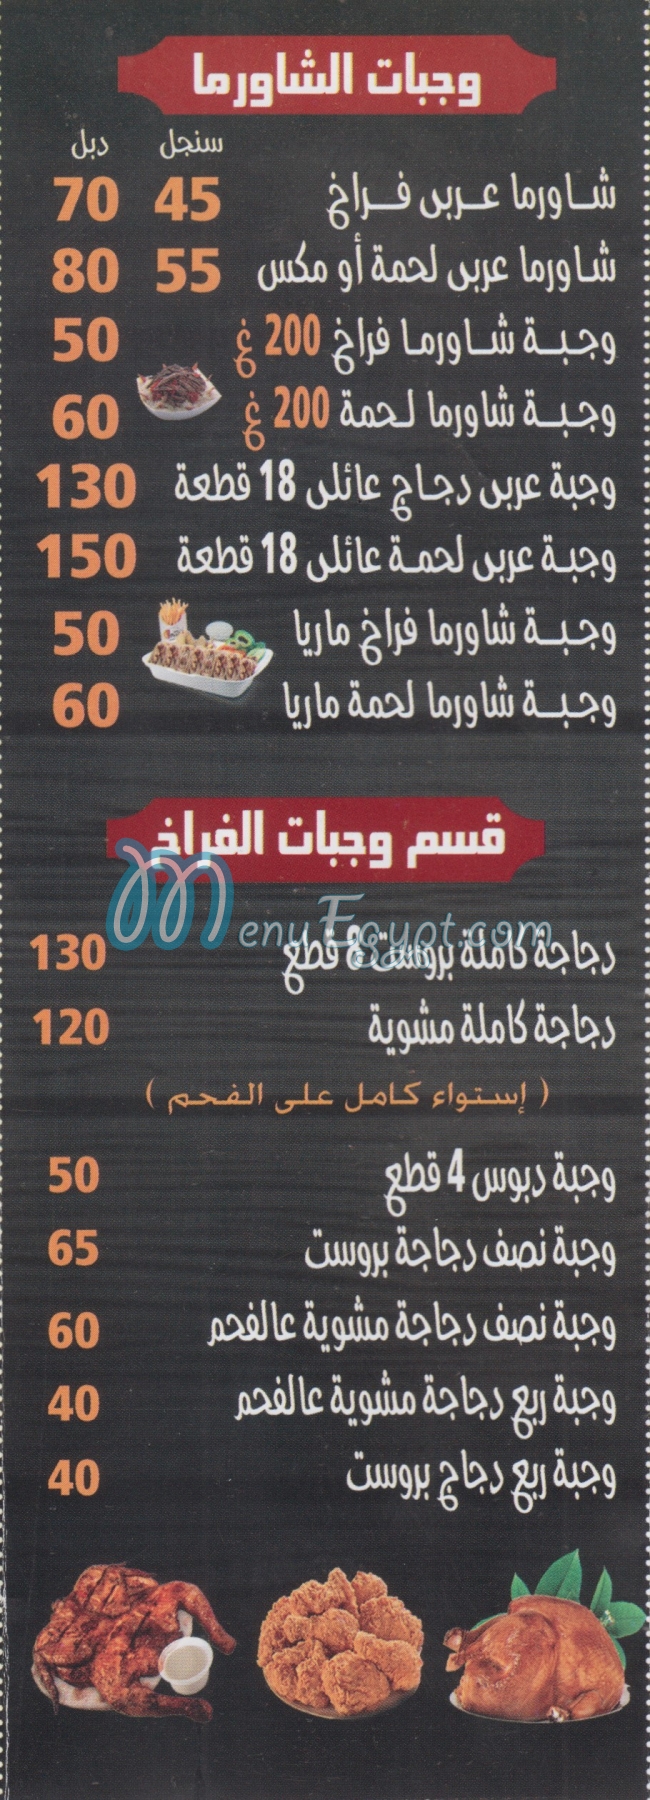 Ibn  Syria delivery menu